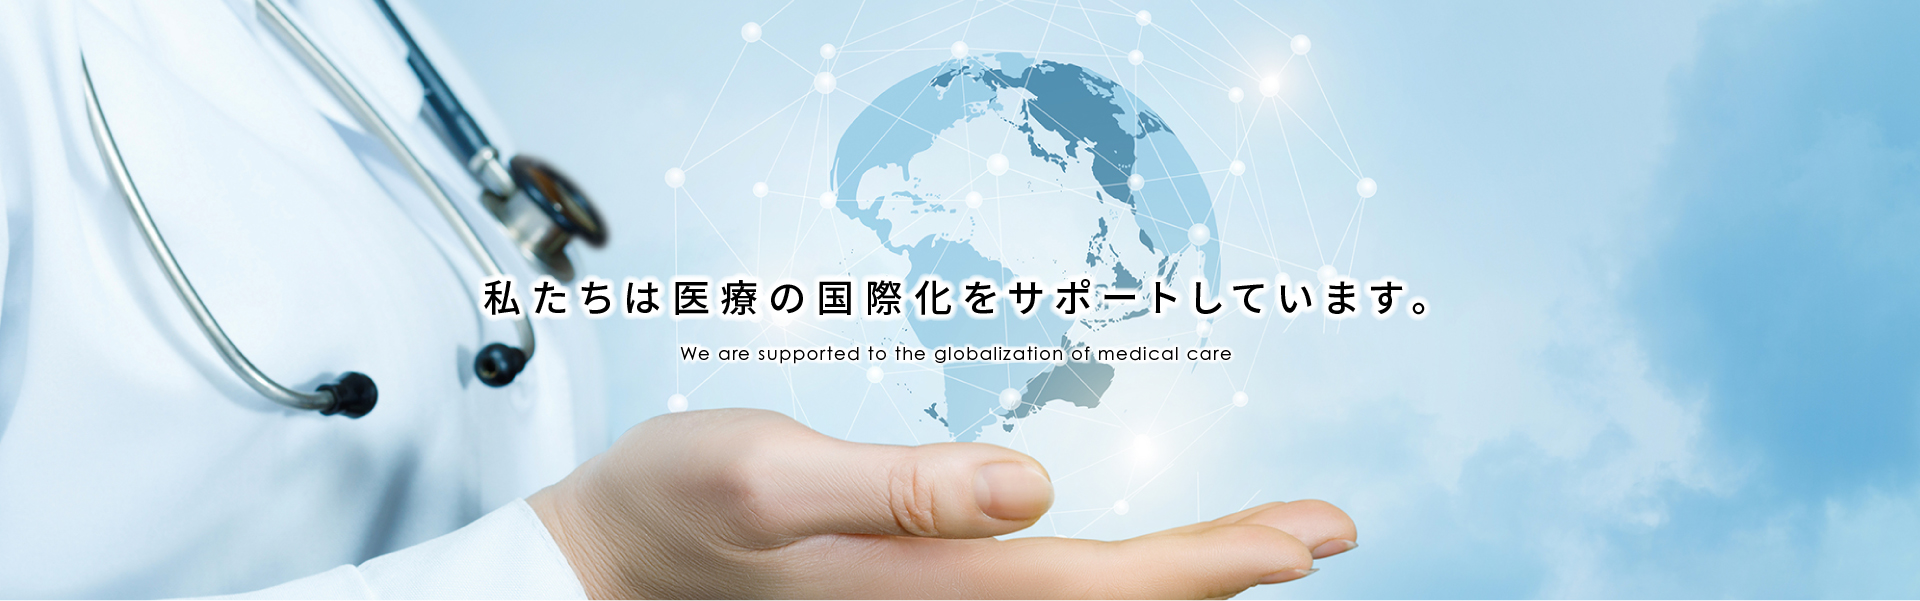 私たちは医療の国際化に貢献します。